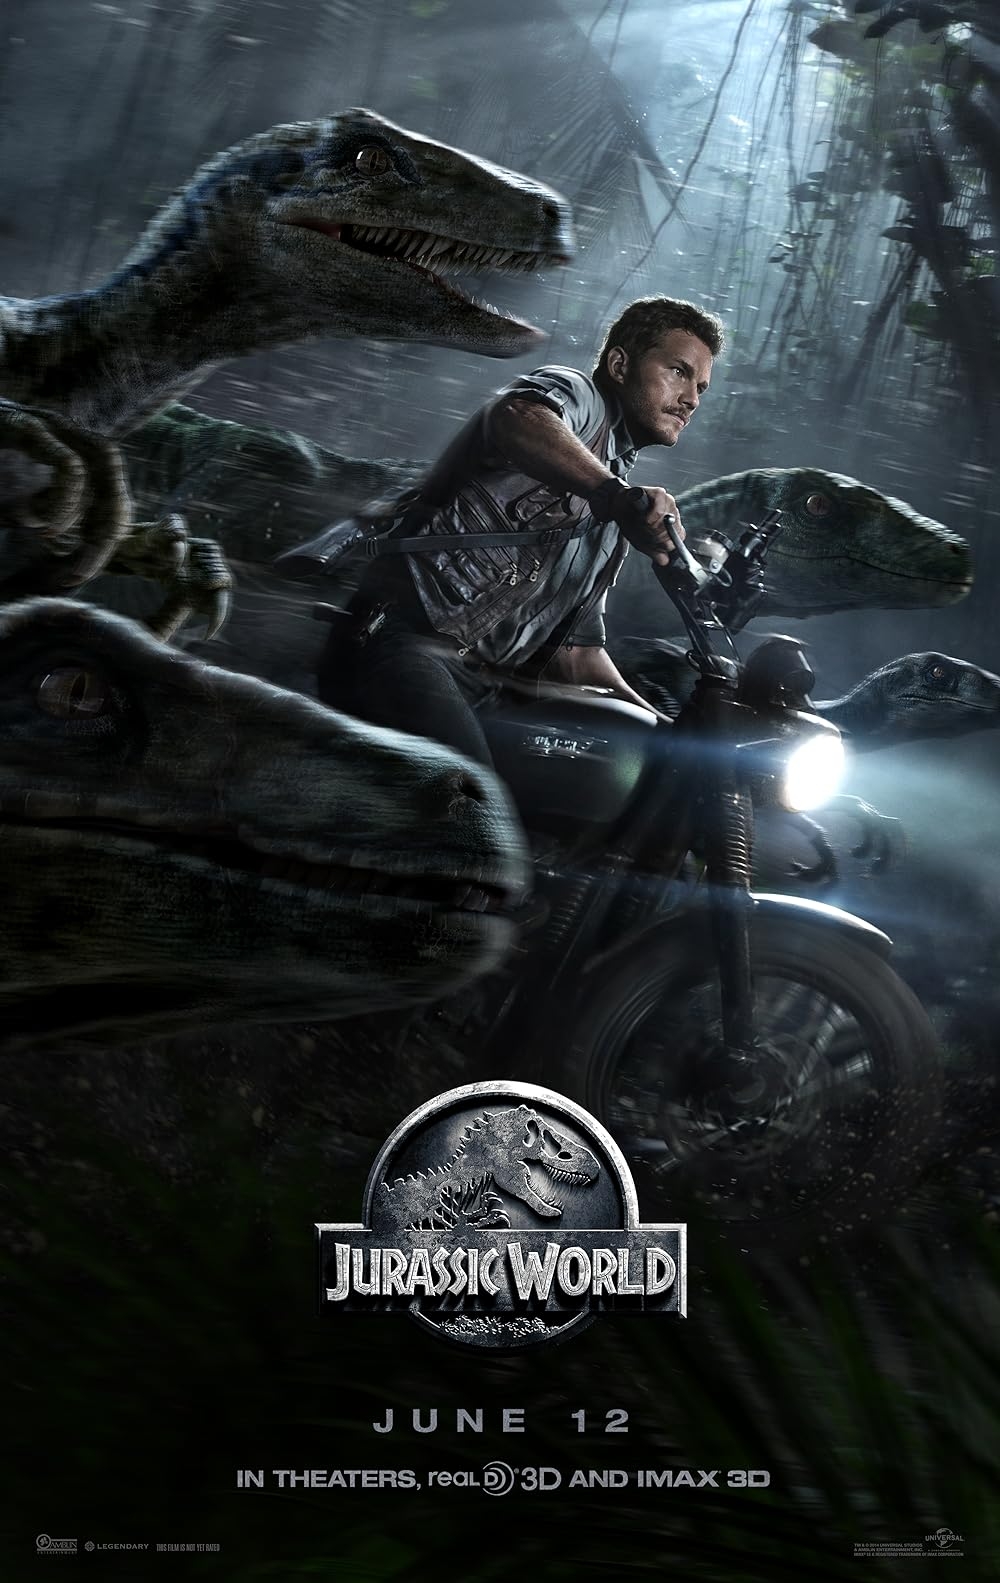 'Jurassic World 4' xác nhận ra mắt, hứa hẹn tạo ra 'Kỷ nguyên mới'